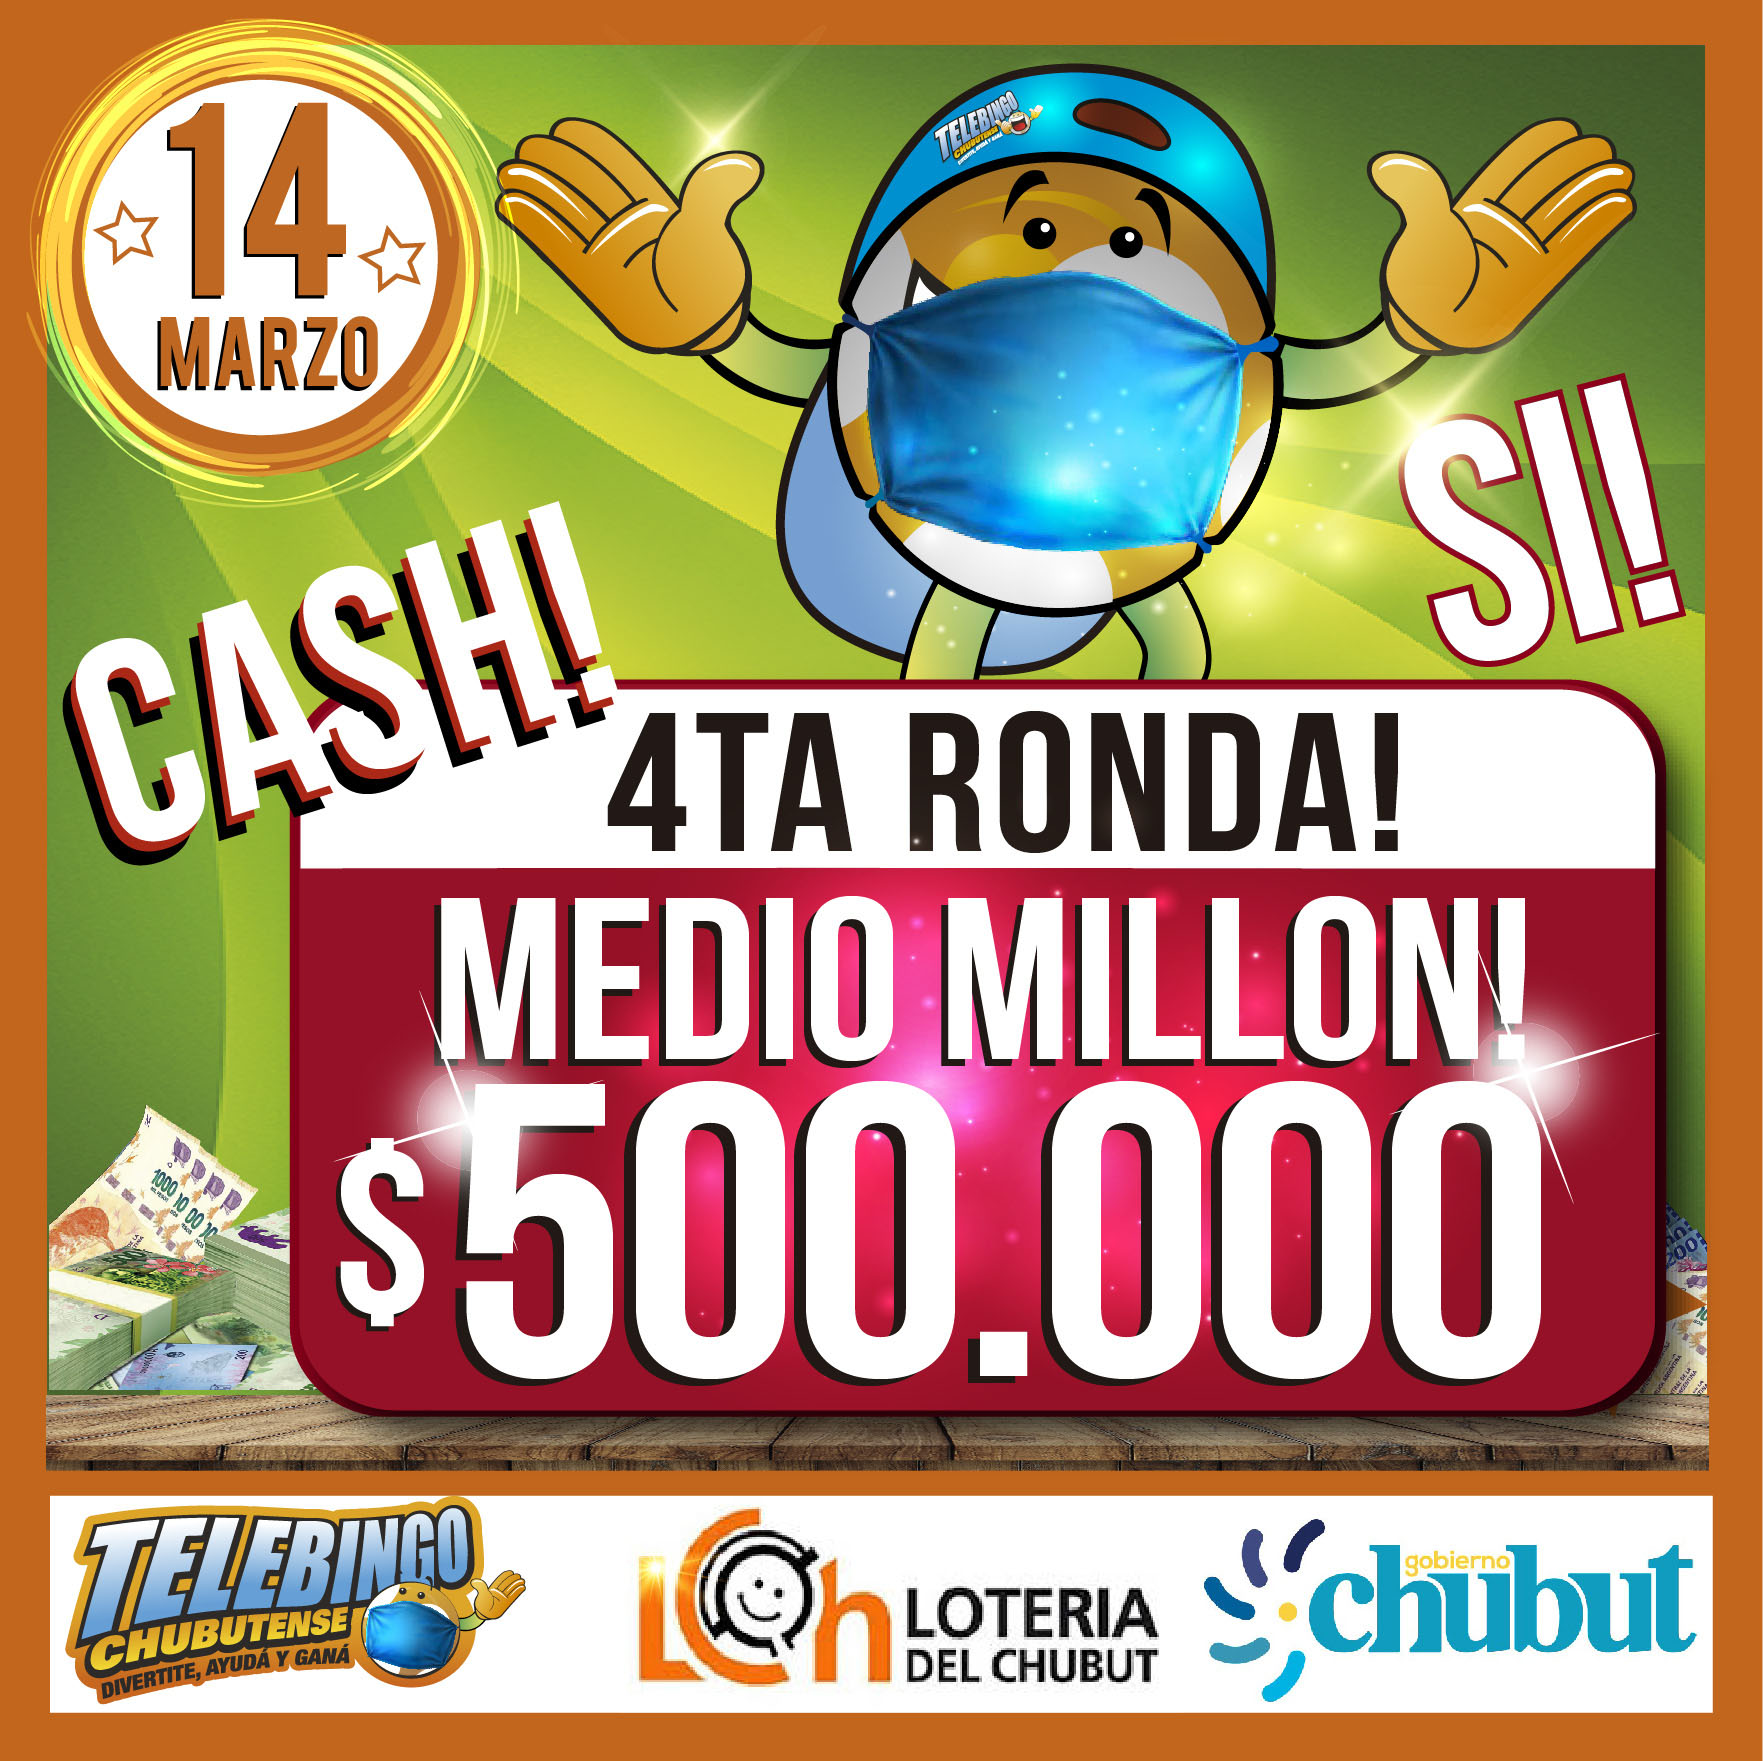 El Telebingo Chubutense sortea hoy más de 800 mil pesos en efectivo